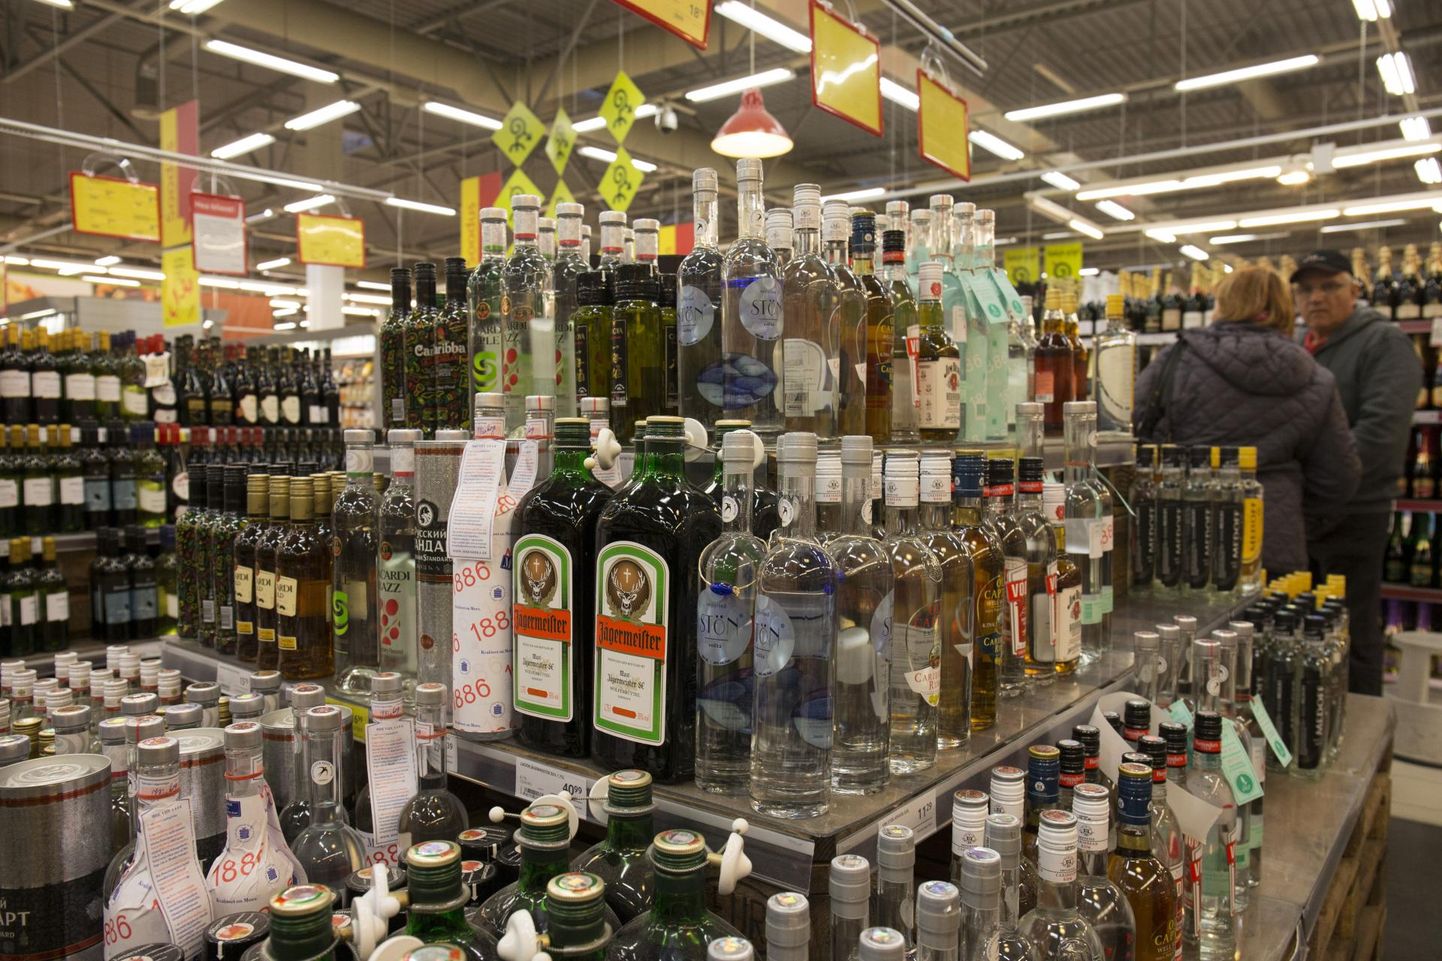 Alates 1. juunist tuleb alkohoolsed joogid seada kaupluses teistest kaupadest eraldi ja piirata alkoholi nähtavust väljastpoolt müügikohta.